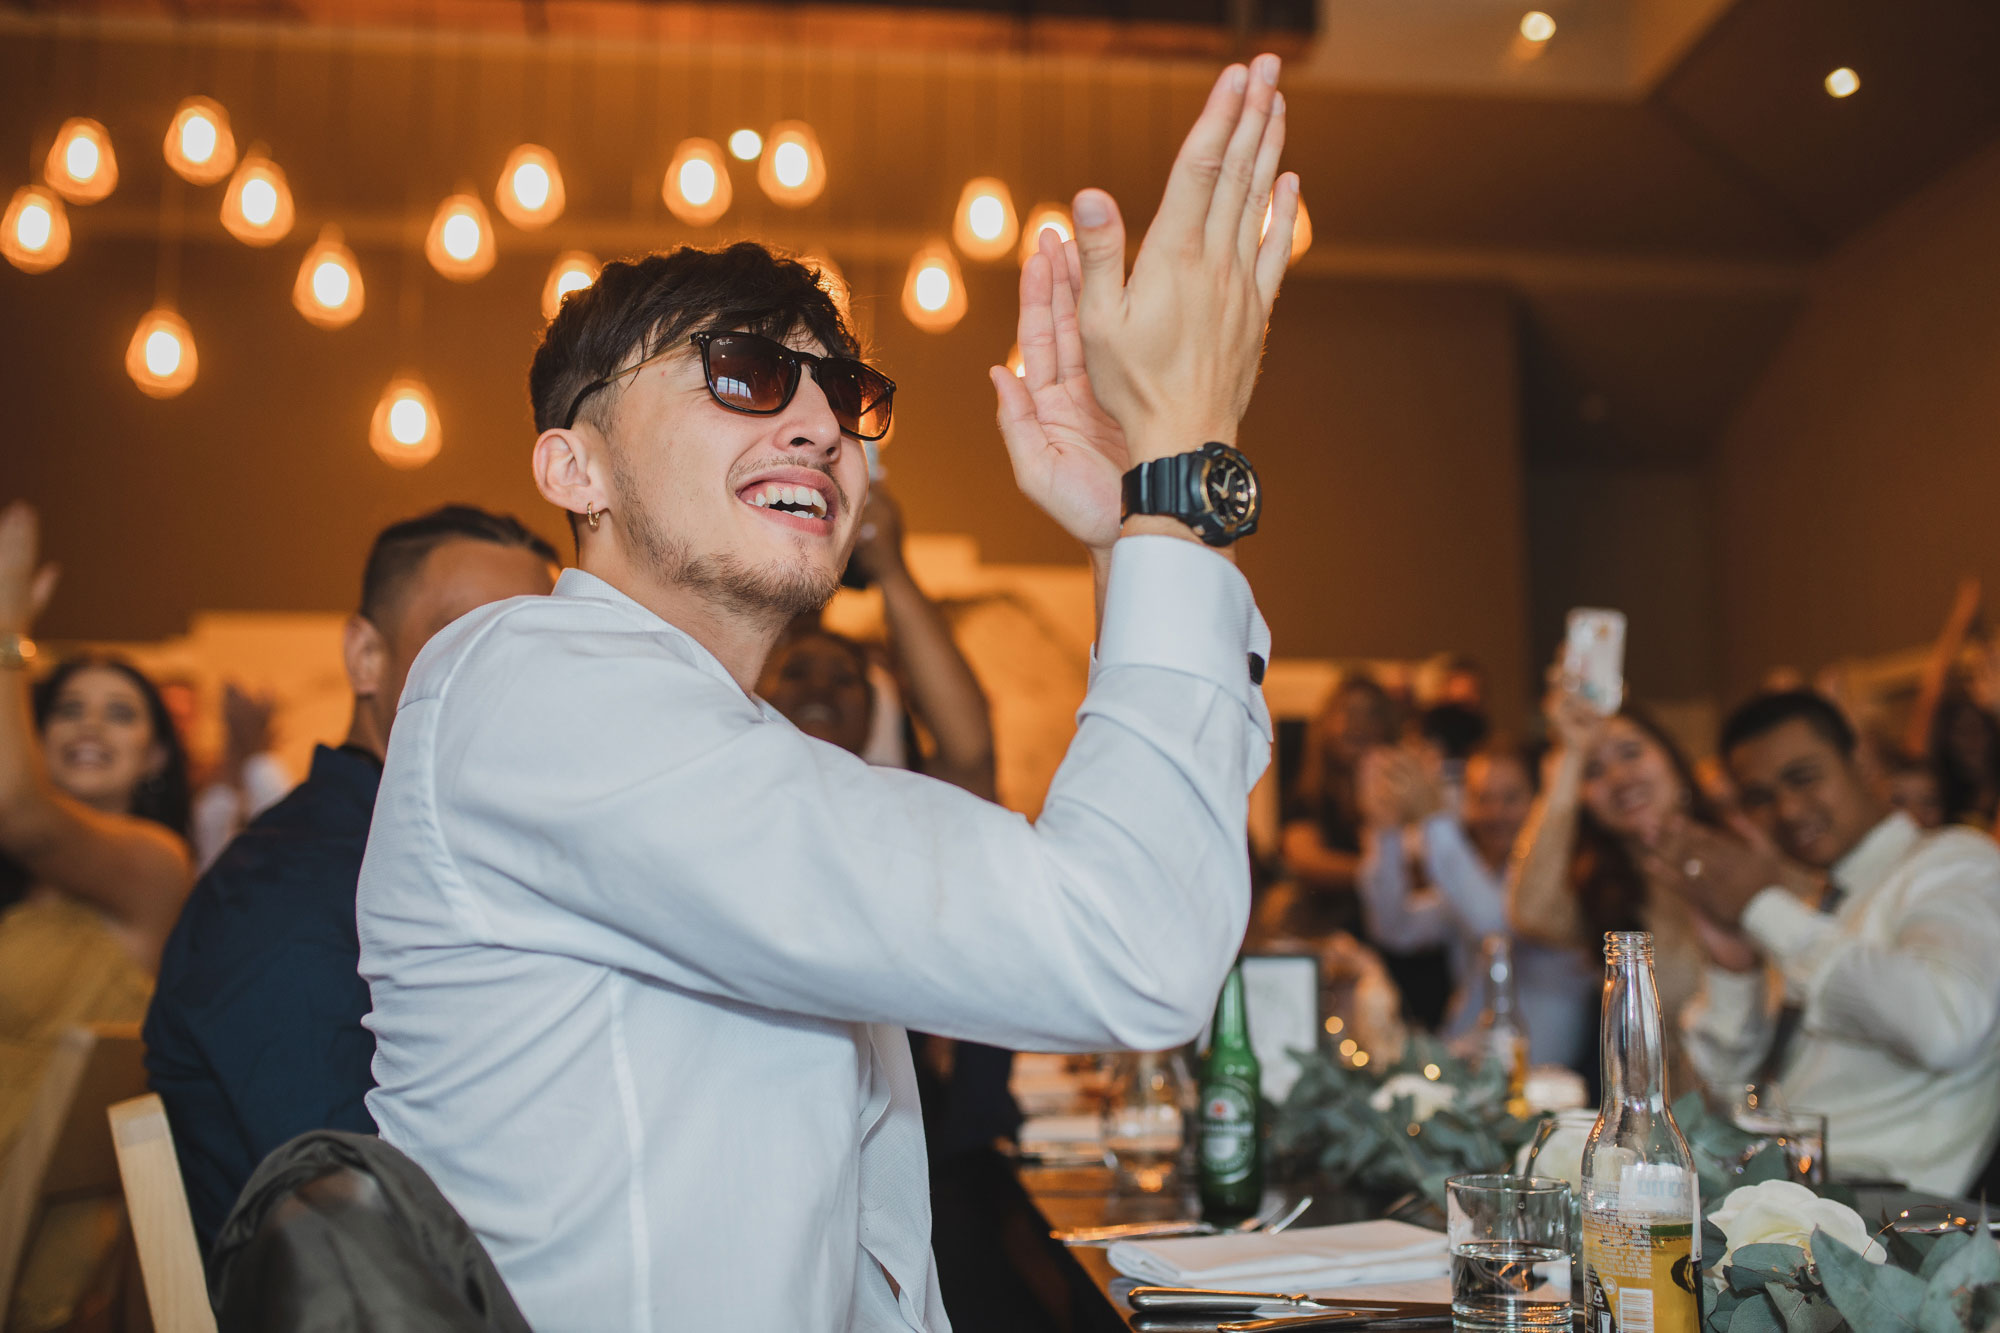 hawke's bay wedding reception guest clapping